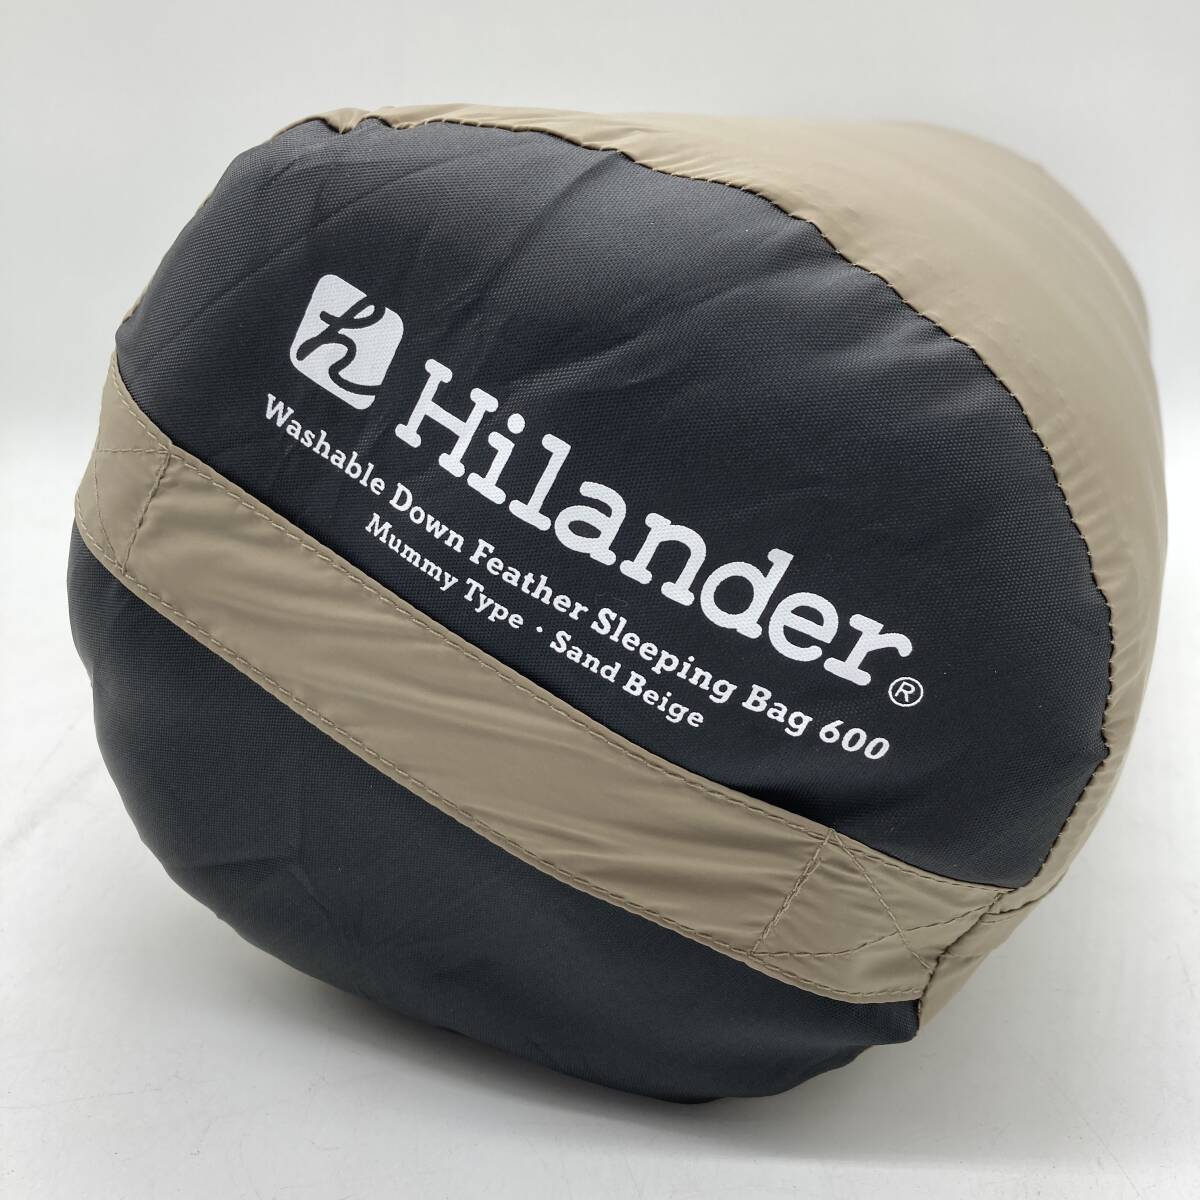 【新品未使用】Hilander(ハイランダー) 洗えるダウンフェザーシュラフ 600 5℃ サンドベージュ N-071 /Y20198-R3の画像3